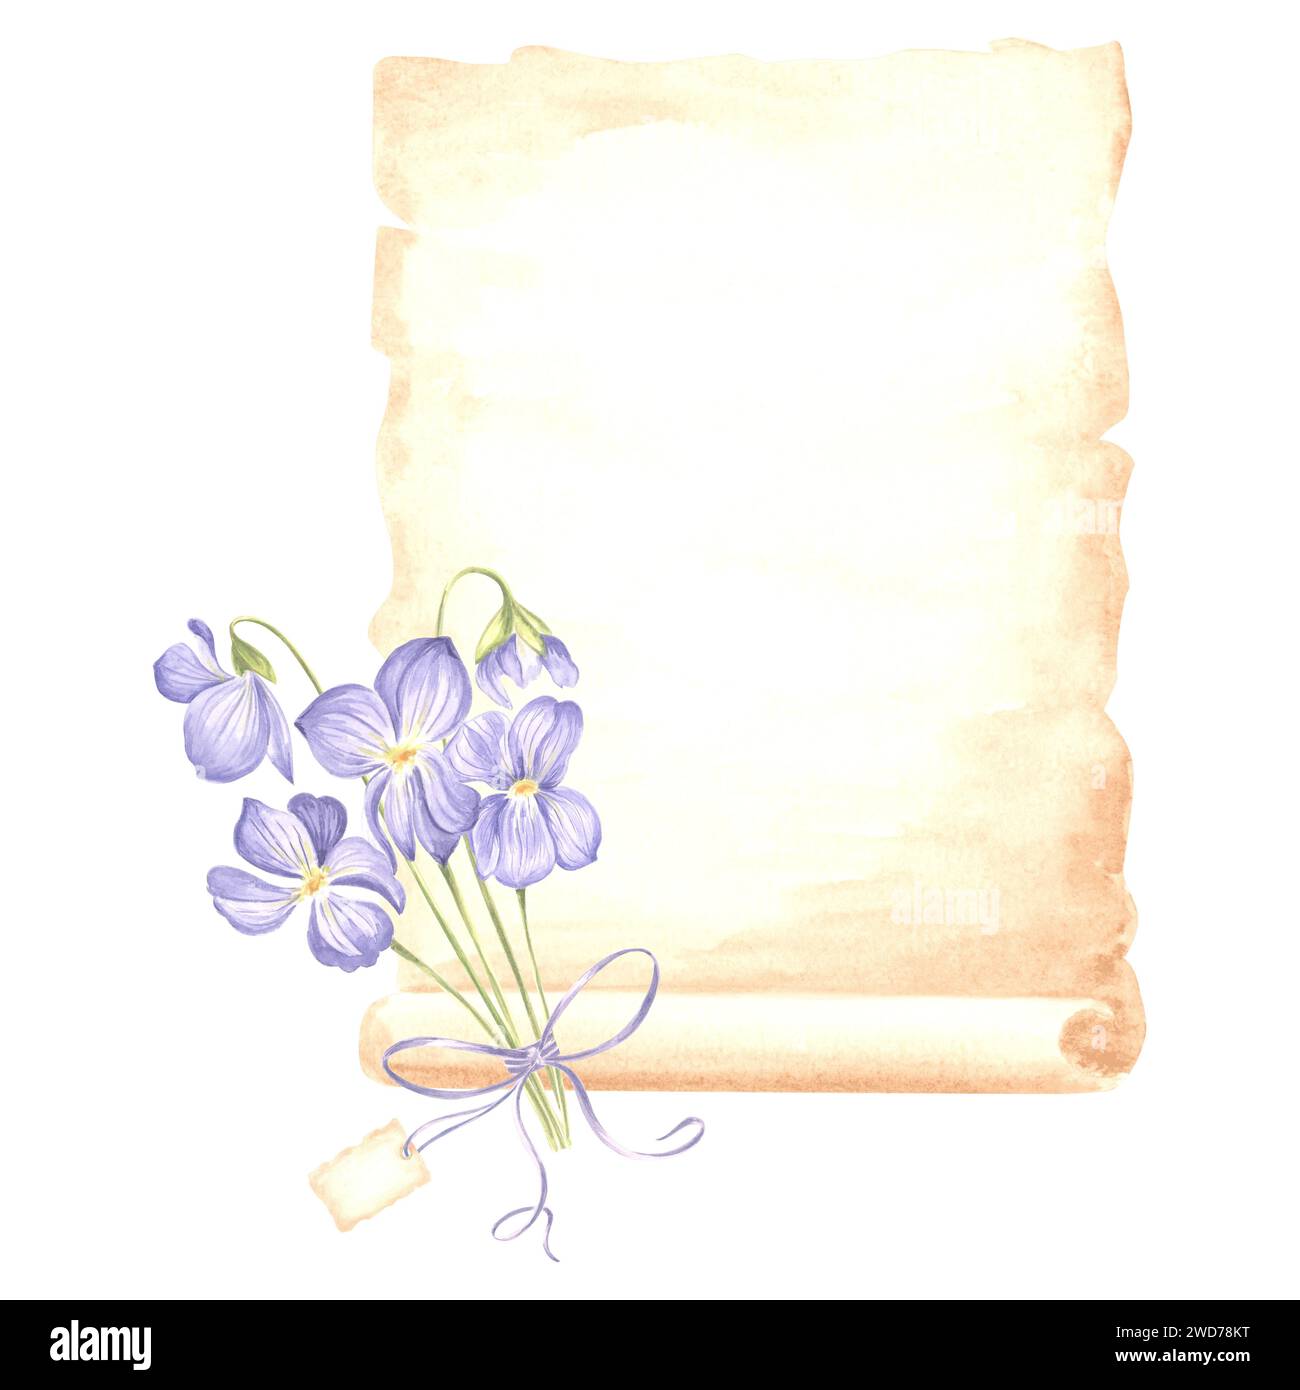 Composition d'aquarelle papyrus, feuilles de papier vieilli avec bouquet de fleur violette sauvage avec arc et étiquette Illustration dessinée à la main isolée de la casserole de champ Banque D'Images